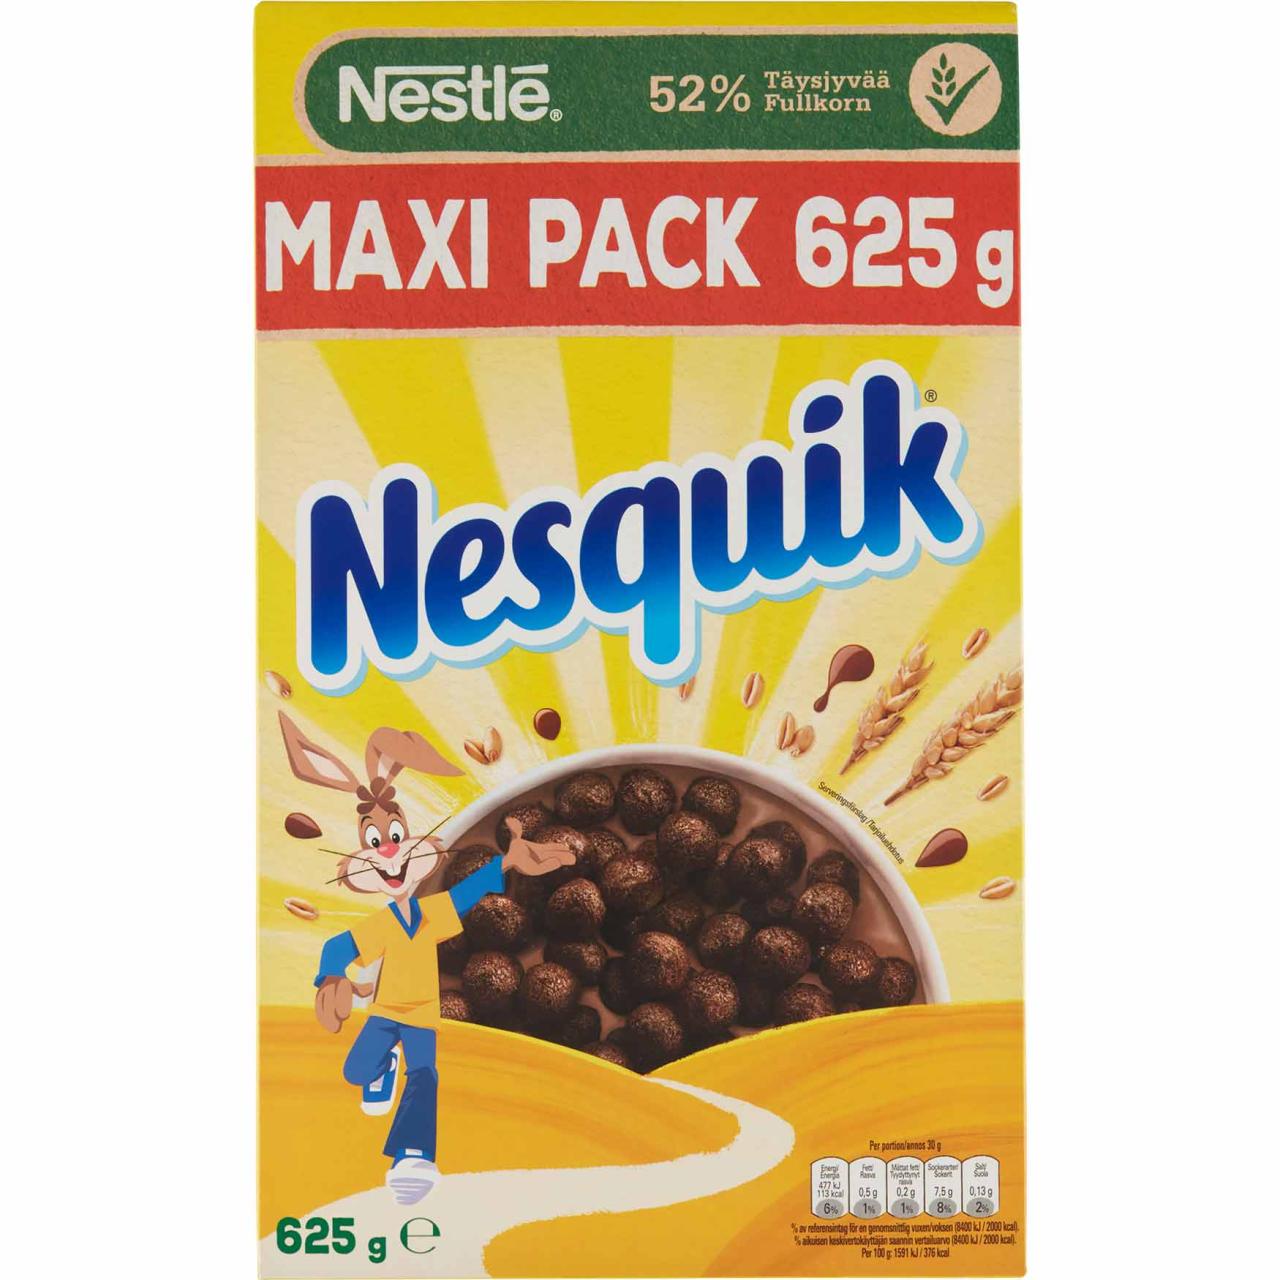 Nestlé Nesquik Cereal 625g